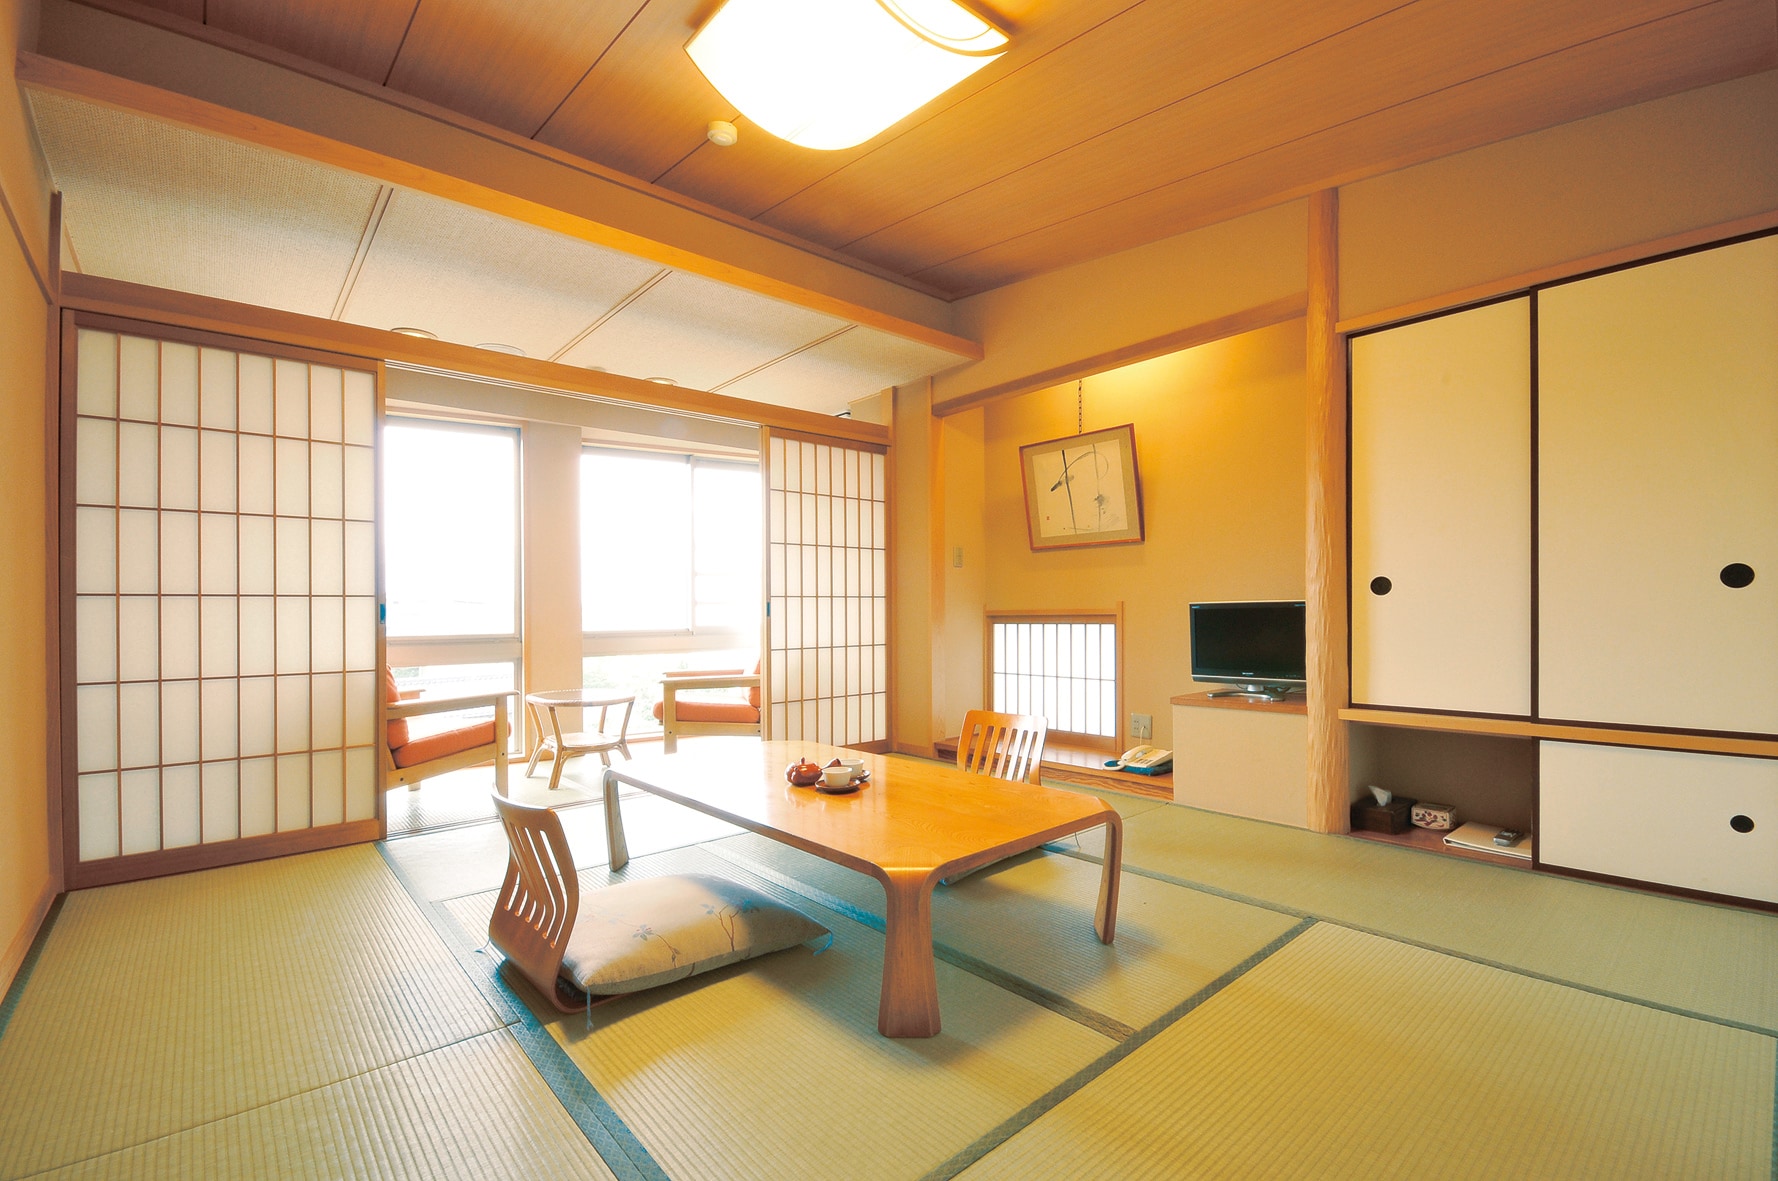 ห้องสไตล์ญี่ปุ่น 8 เสื่อทาทามิ (ภาพ)